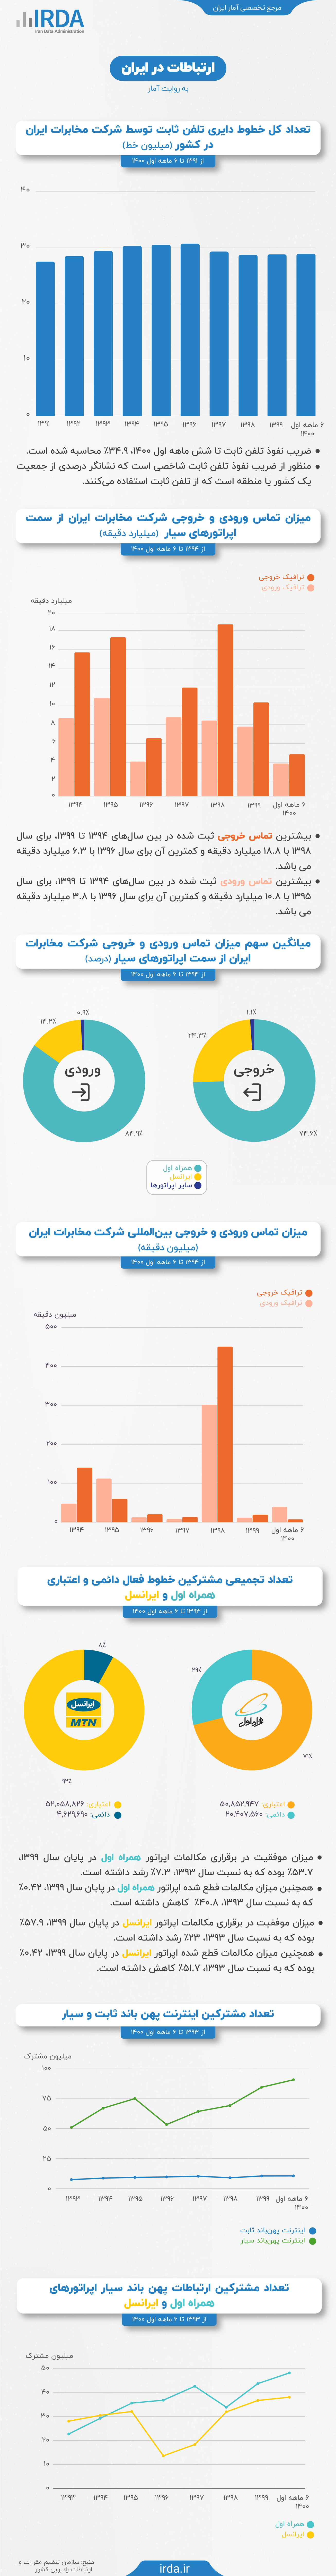 ارتباطات در ایران به روایت آمار